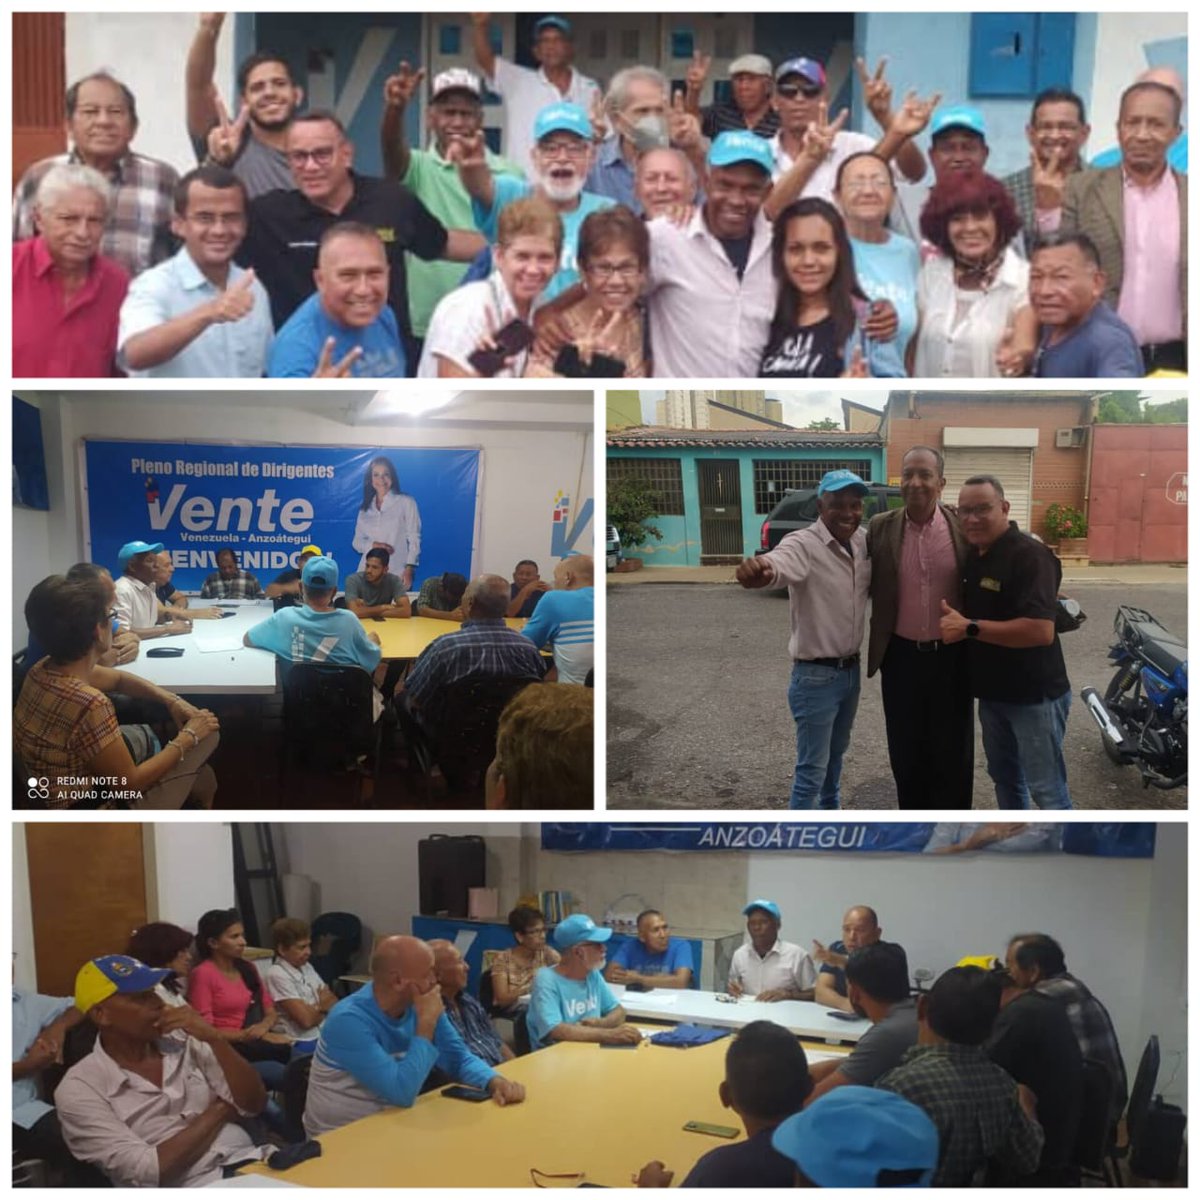 @omargonzalez6
Reunión del equipo municipal de Vente Venezuela en Puerto La Cruz preparando las actividades de esta semana que contemplan 
asambleas de ciudadanos en Las Charas, Juan Bimba y La Caraqueña.